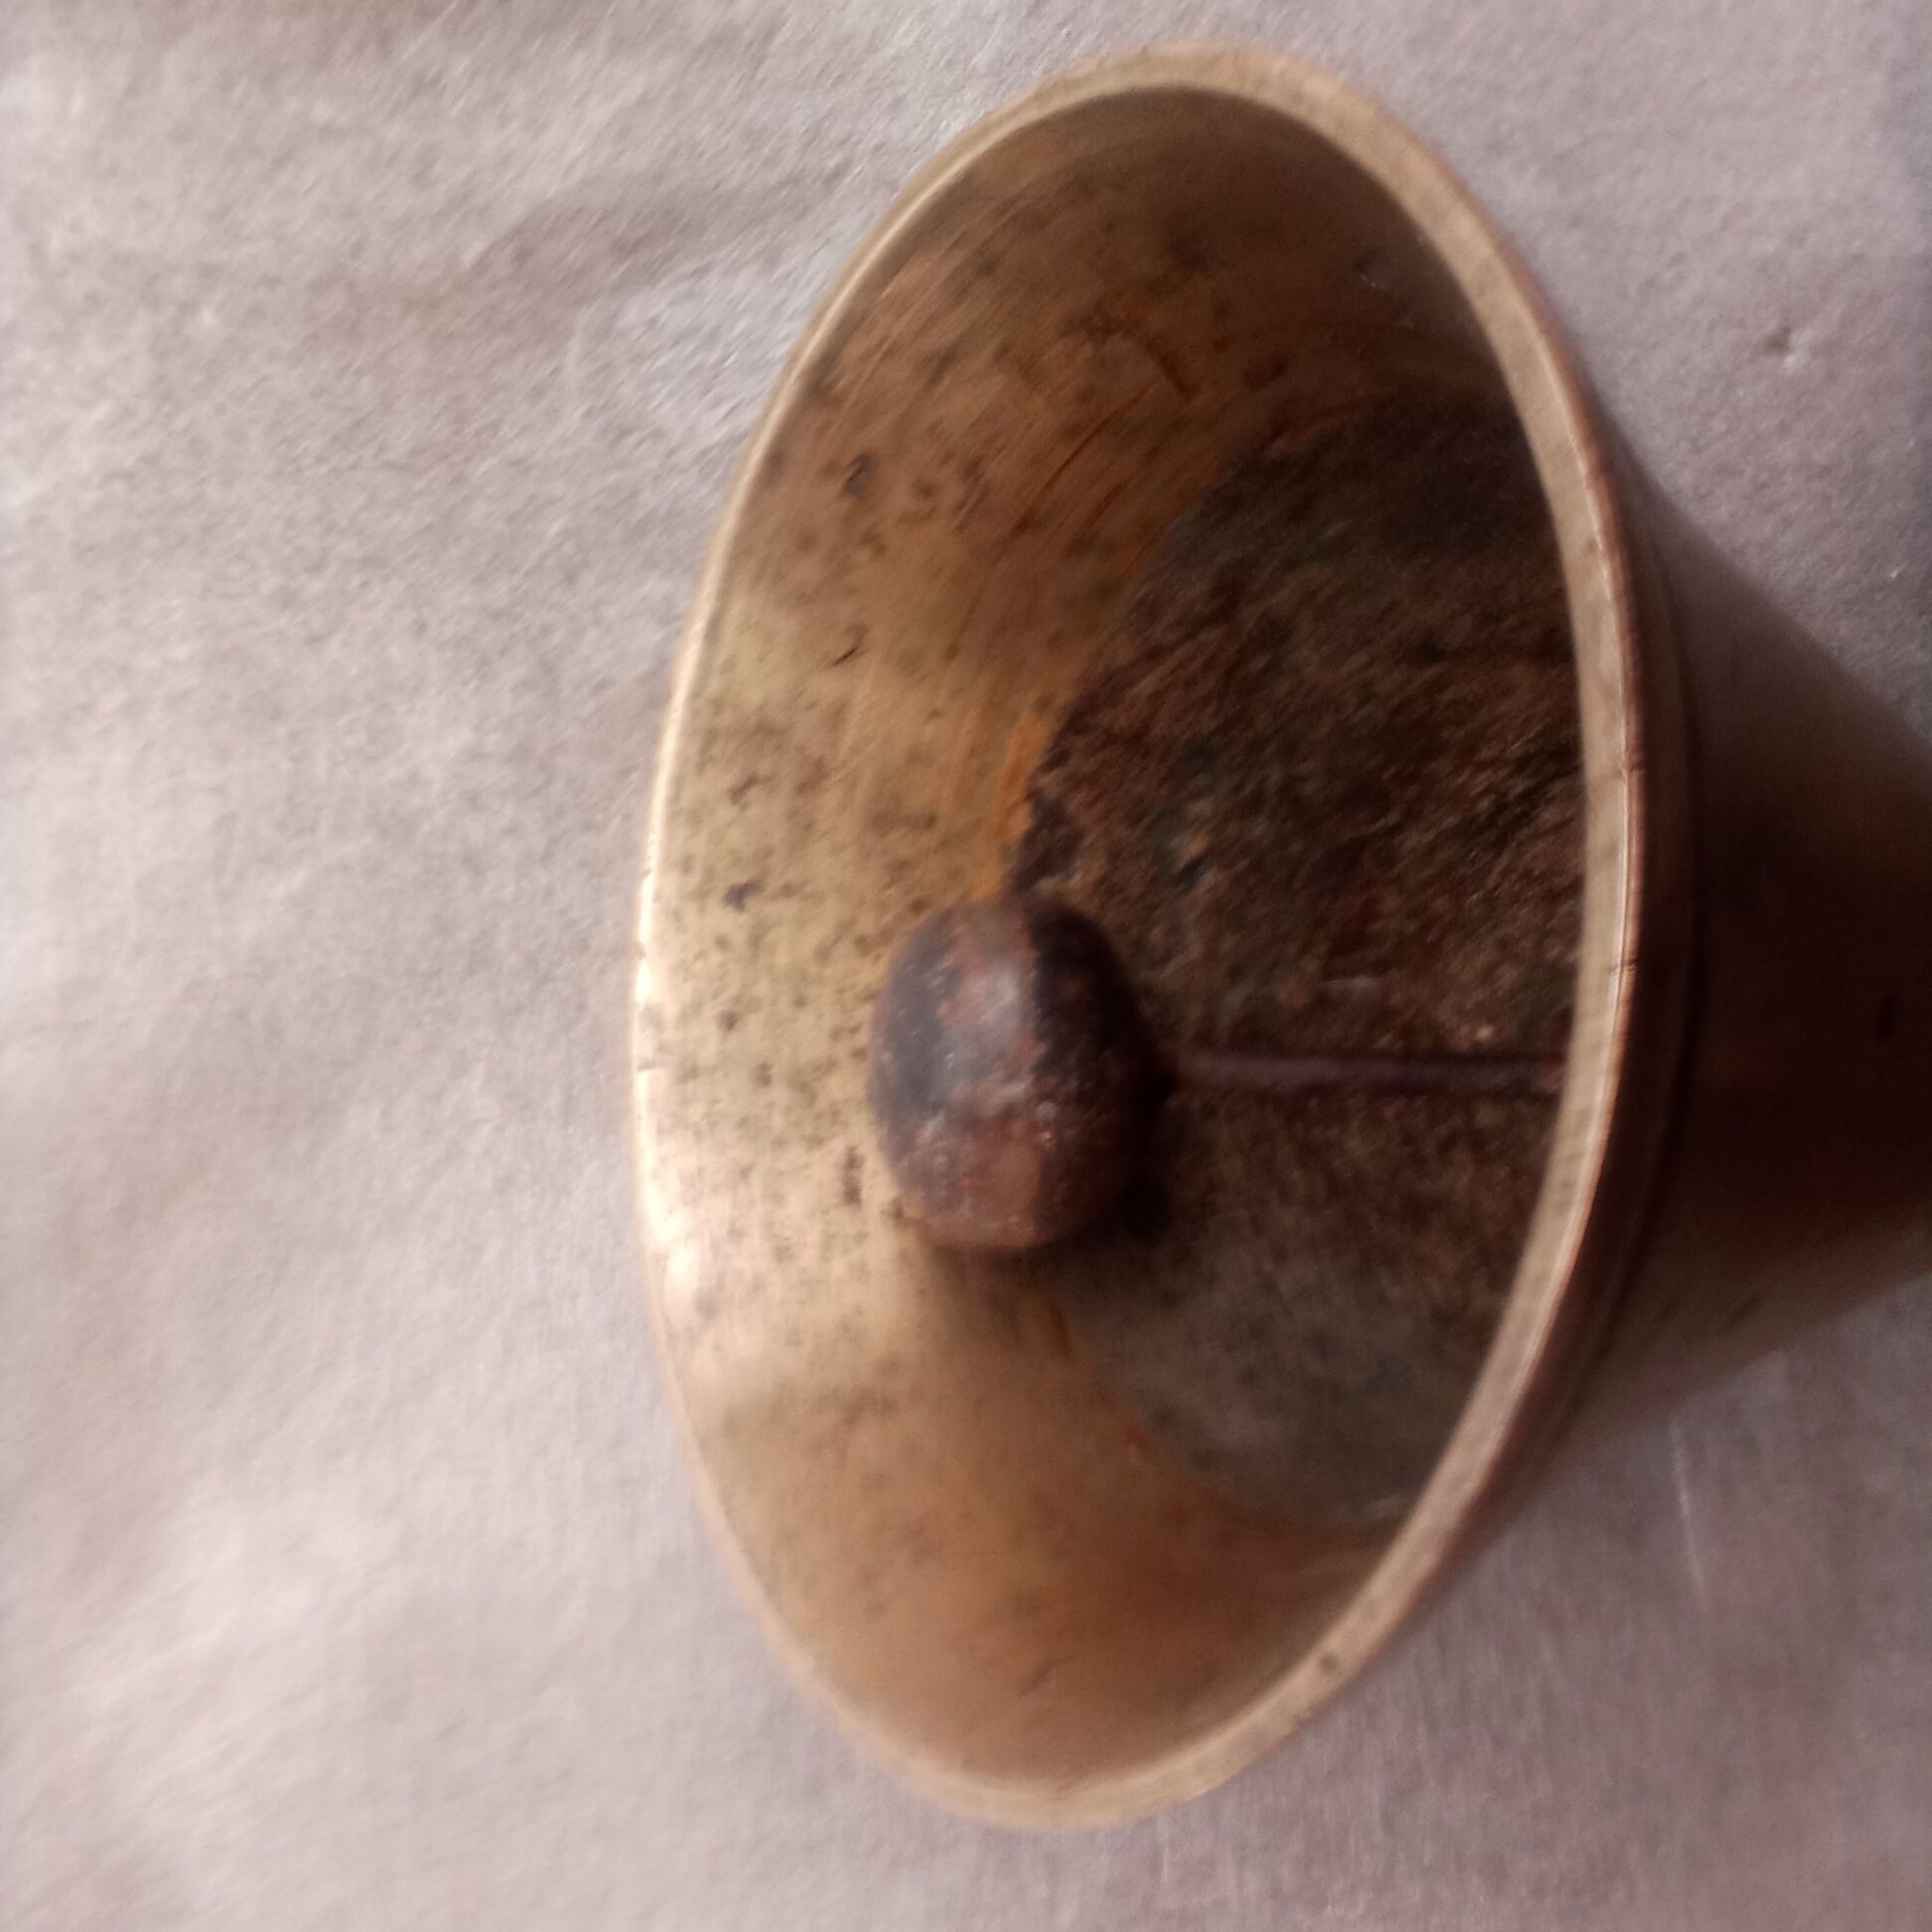 Оригинальный бронзовый колокольчик из бронзы и рога. Англия.

1 400 гр